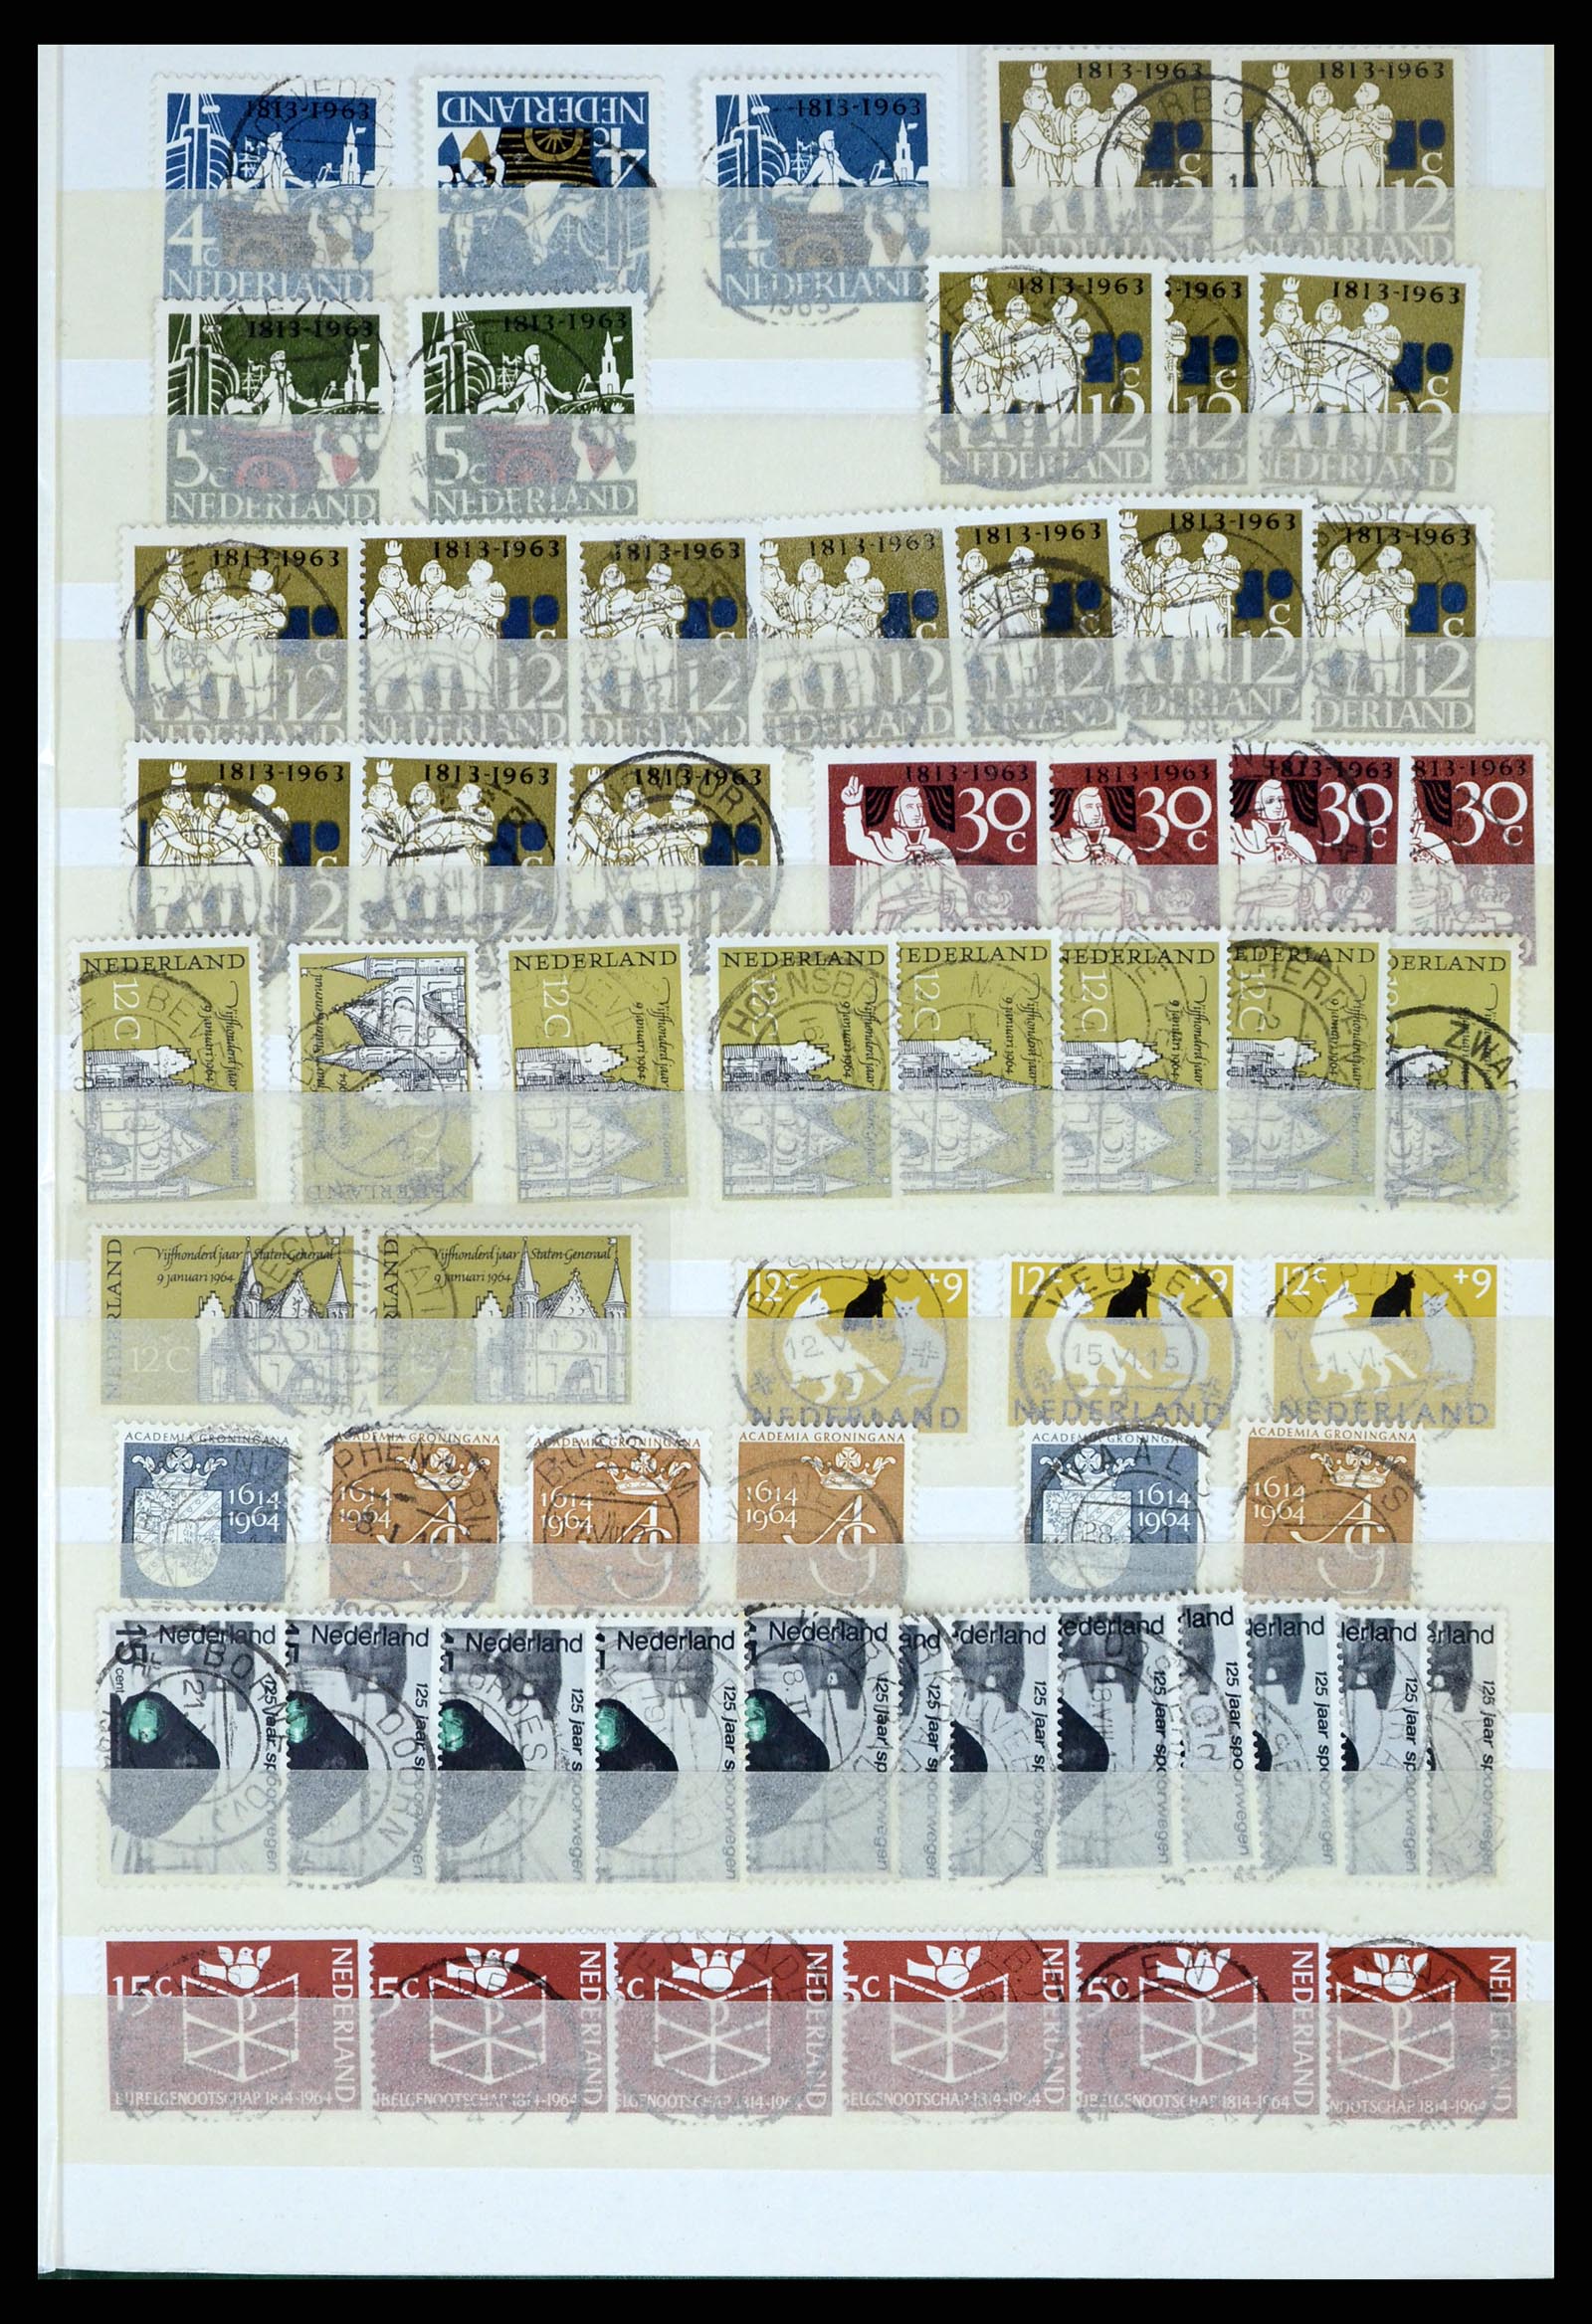 37424 057 - Postzegelverzameling 37424 Nederland kortebalk stempels.